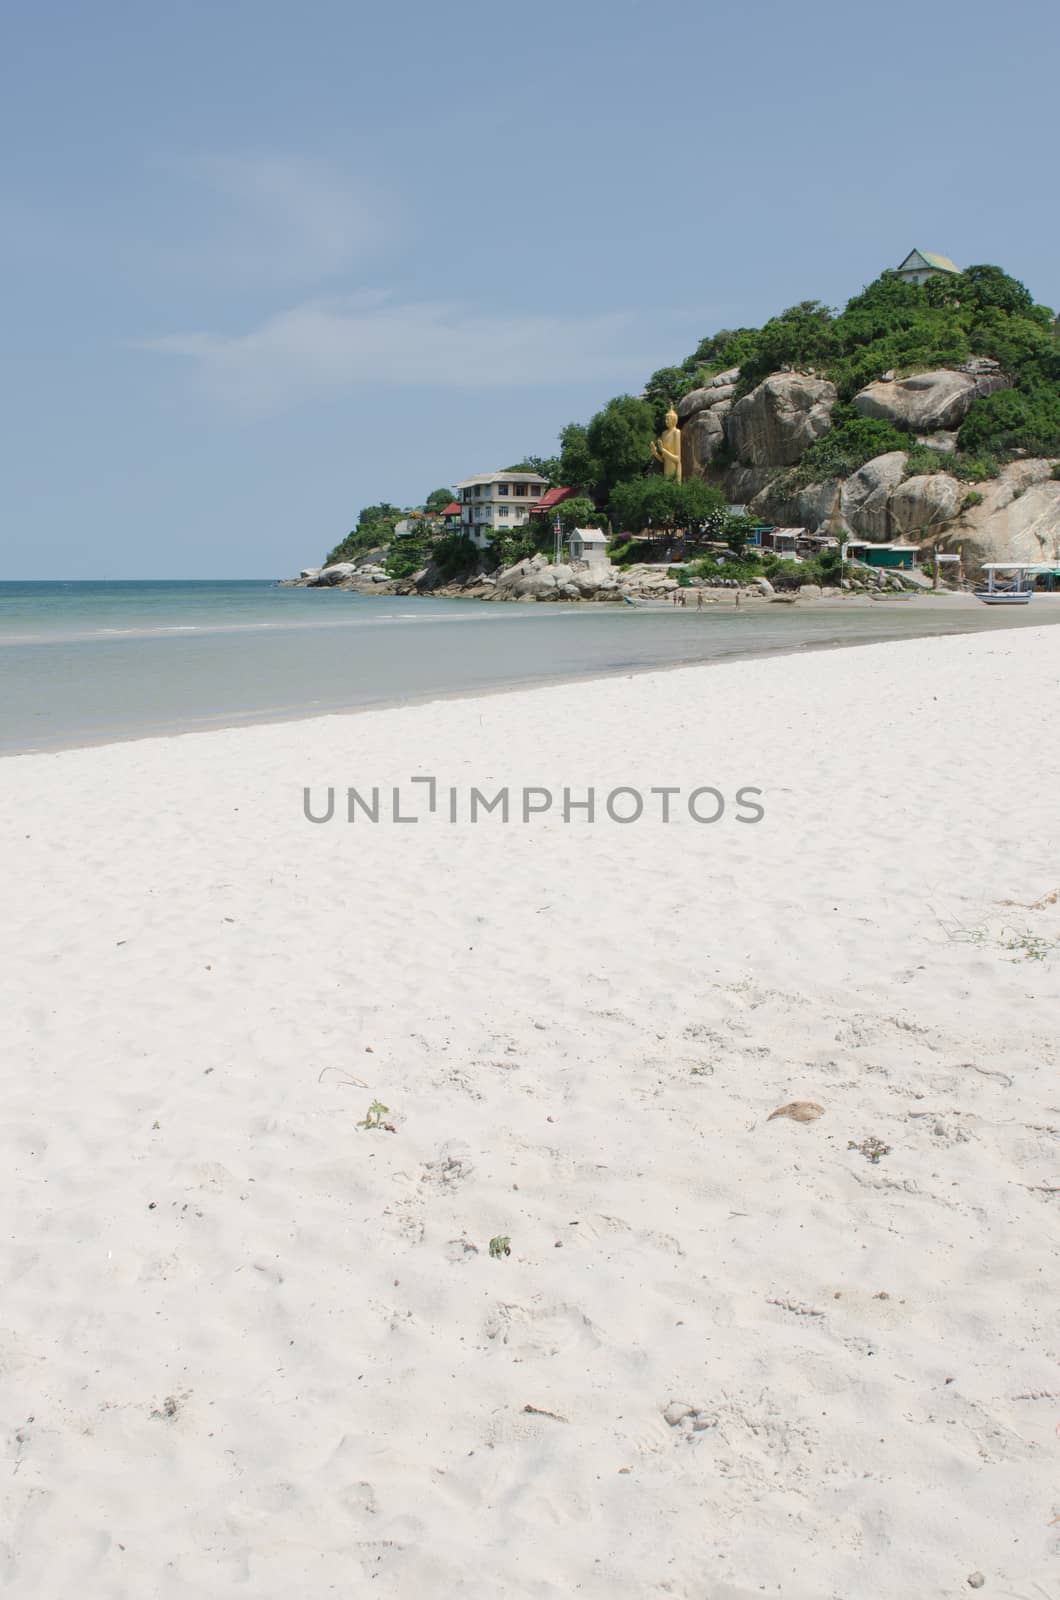 beautiful Hua Hin beach in Thailand